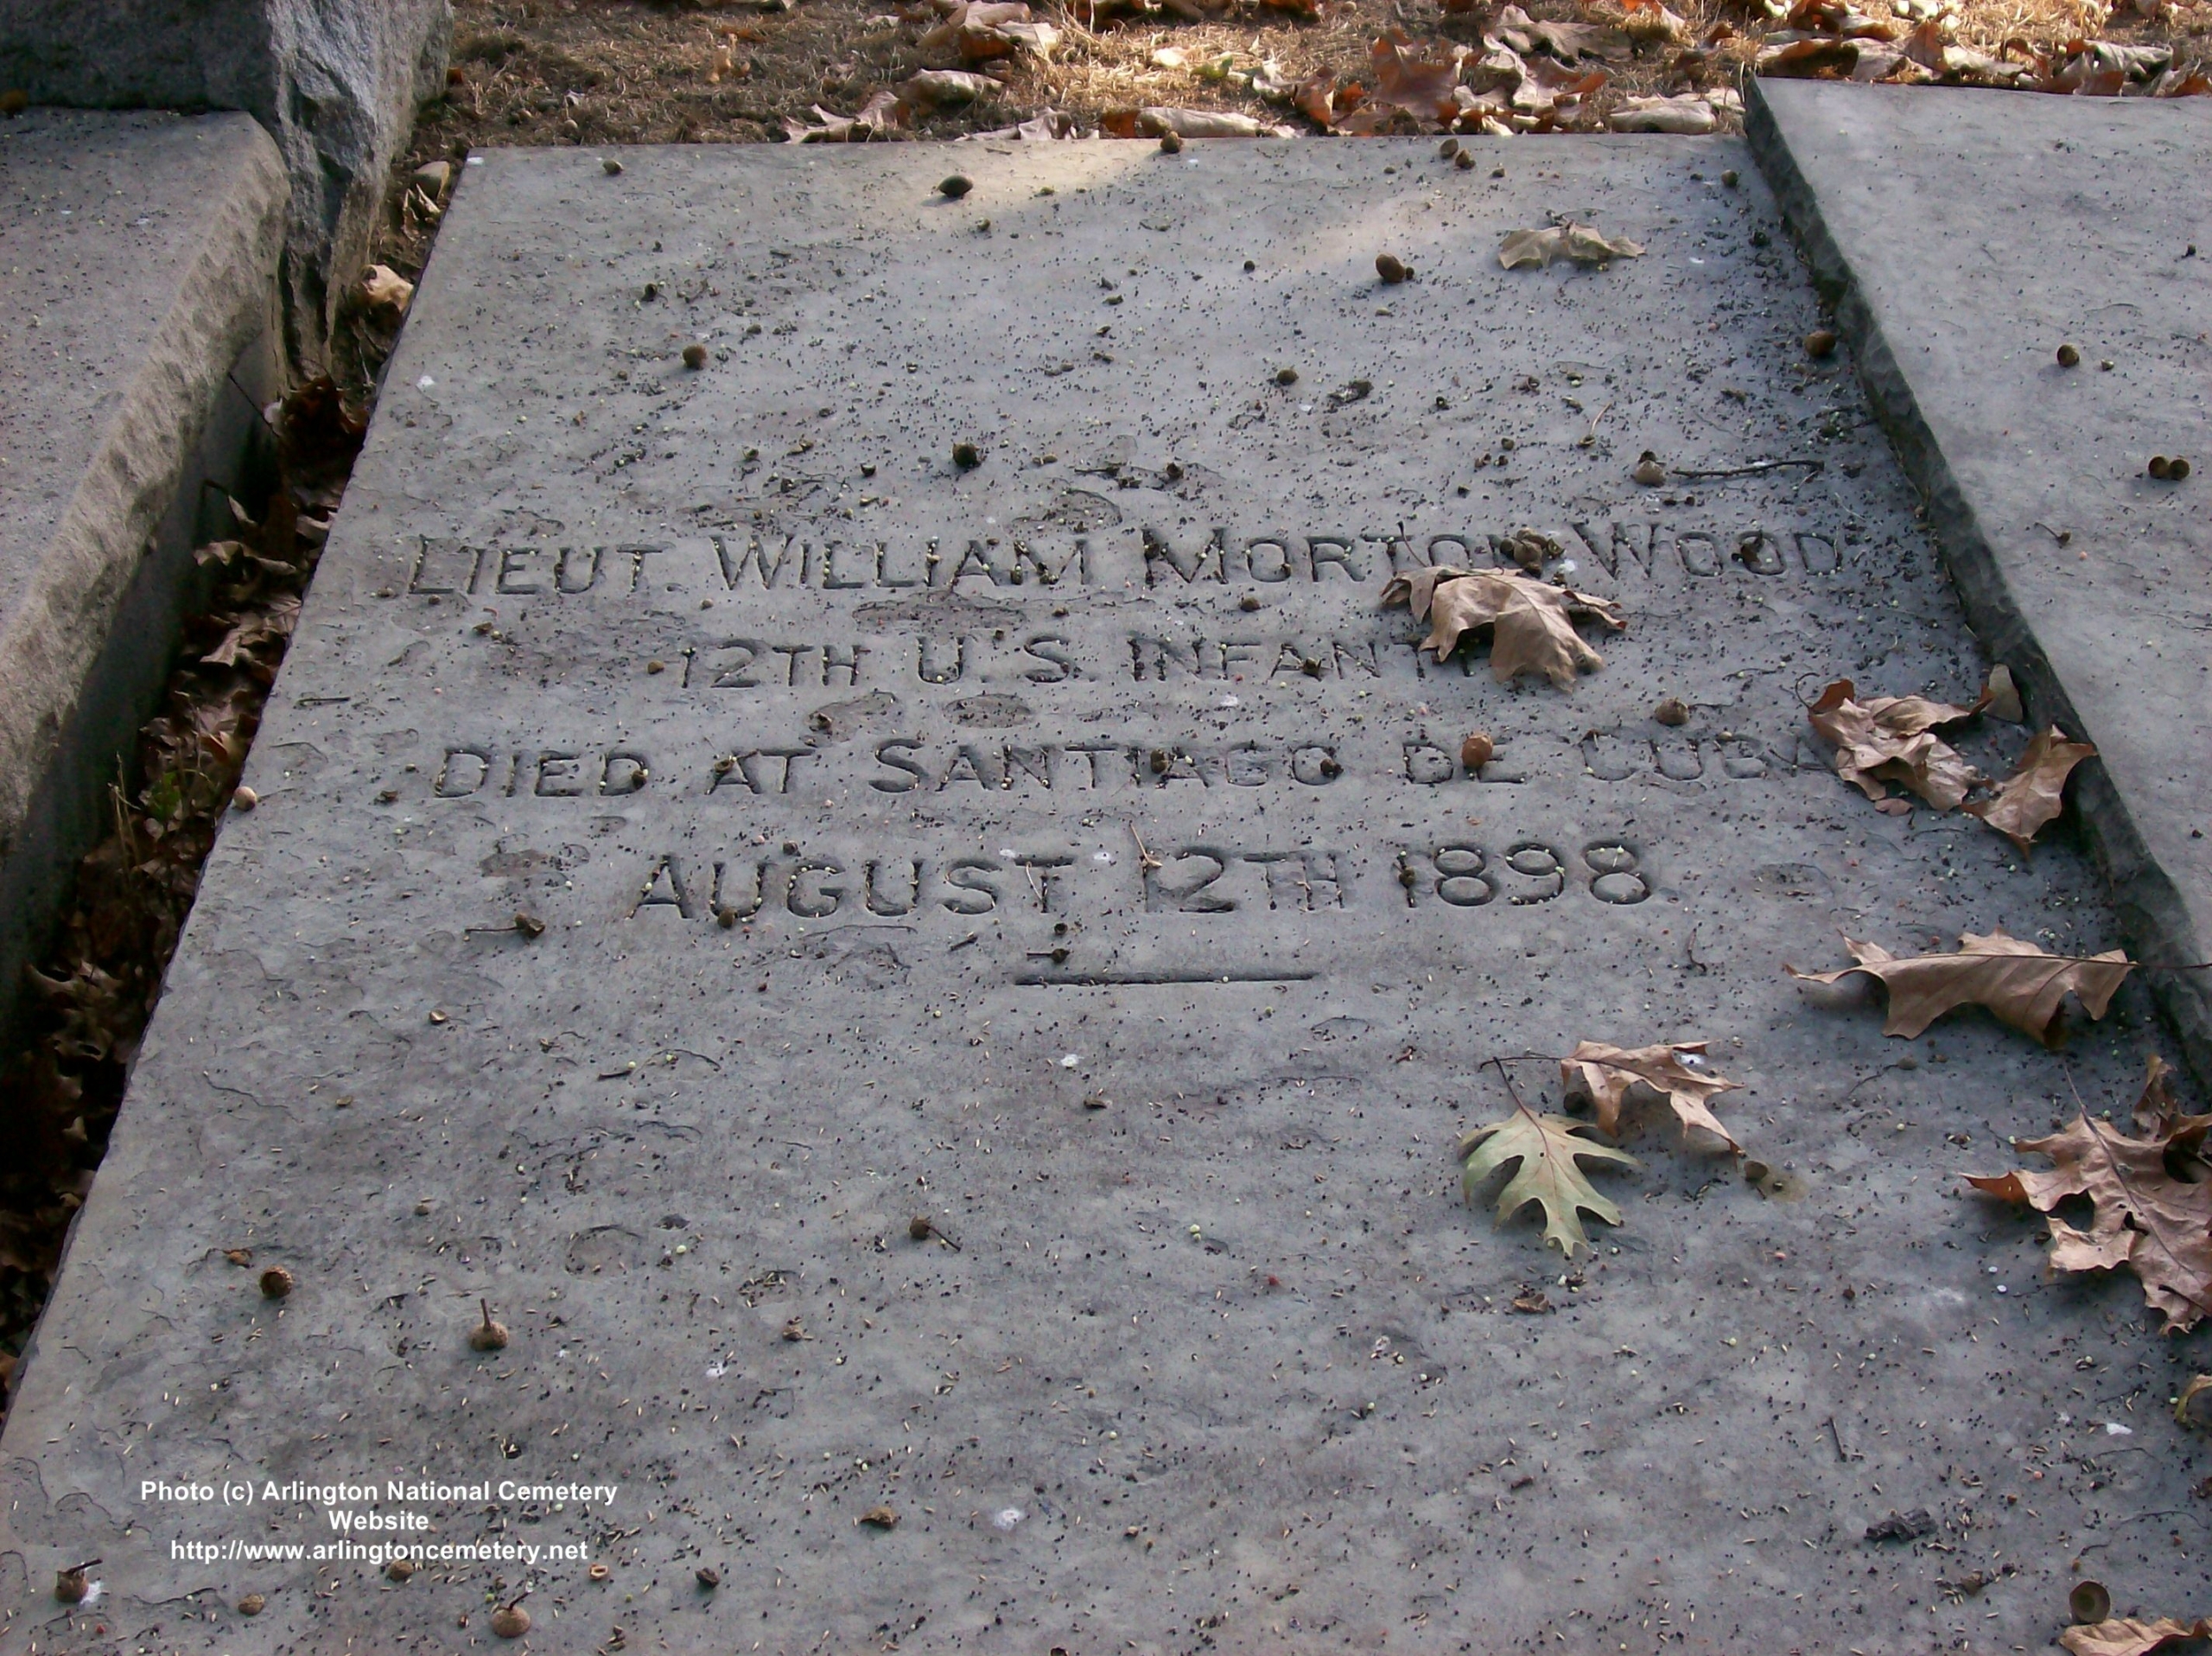 wmwood-gravesite-photo-october-2007-001